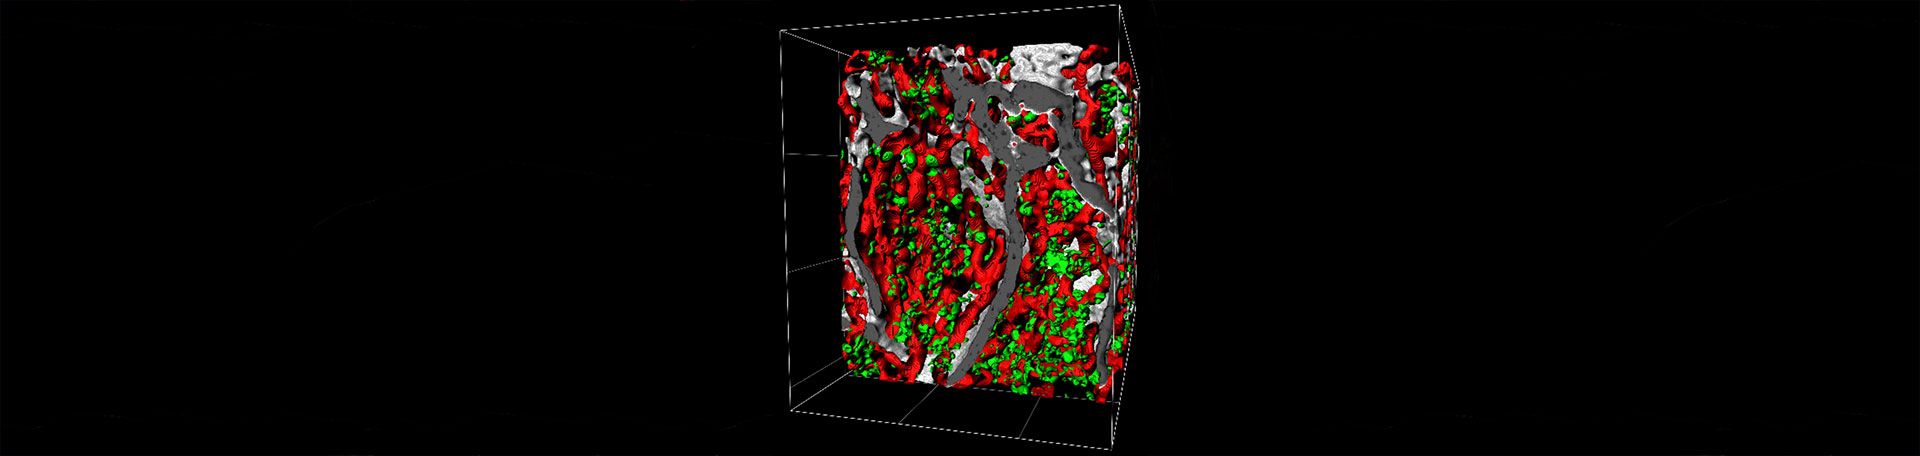 Illustrationsbild: 3D Rekonstruktion des Knochenmarks mit Megakaryozyten und Blutgefäßen.